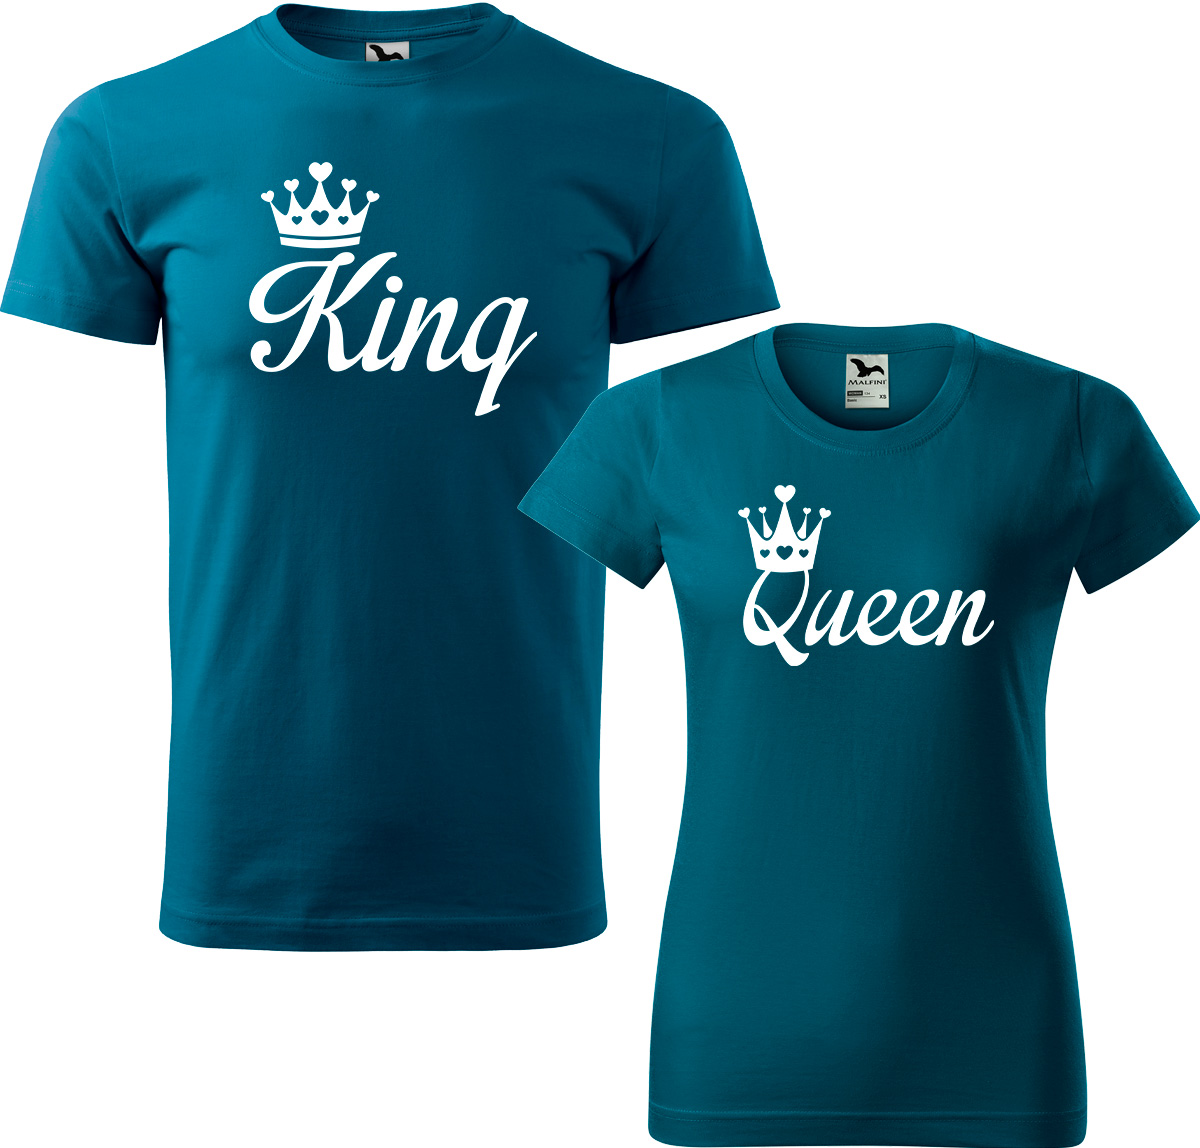 Trička pro páry - King a queen Barva: Petrolejová (93), Velikost dámské tričko: S, Velikost pánské tričko: S